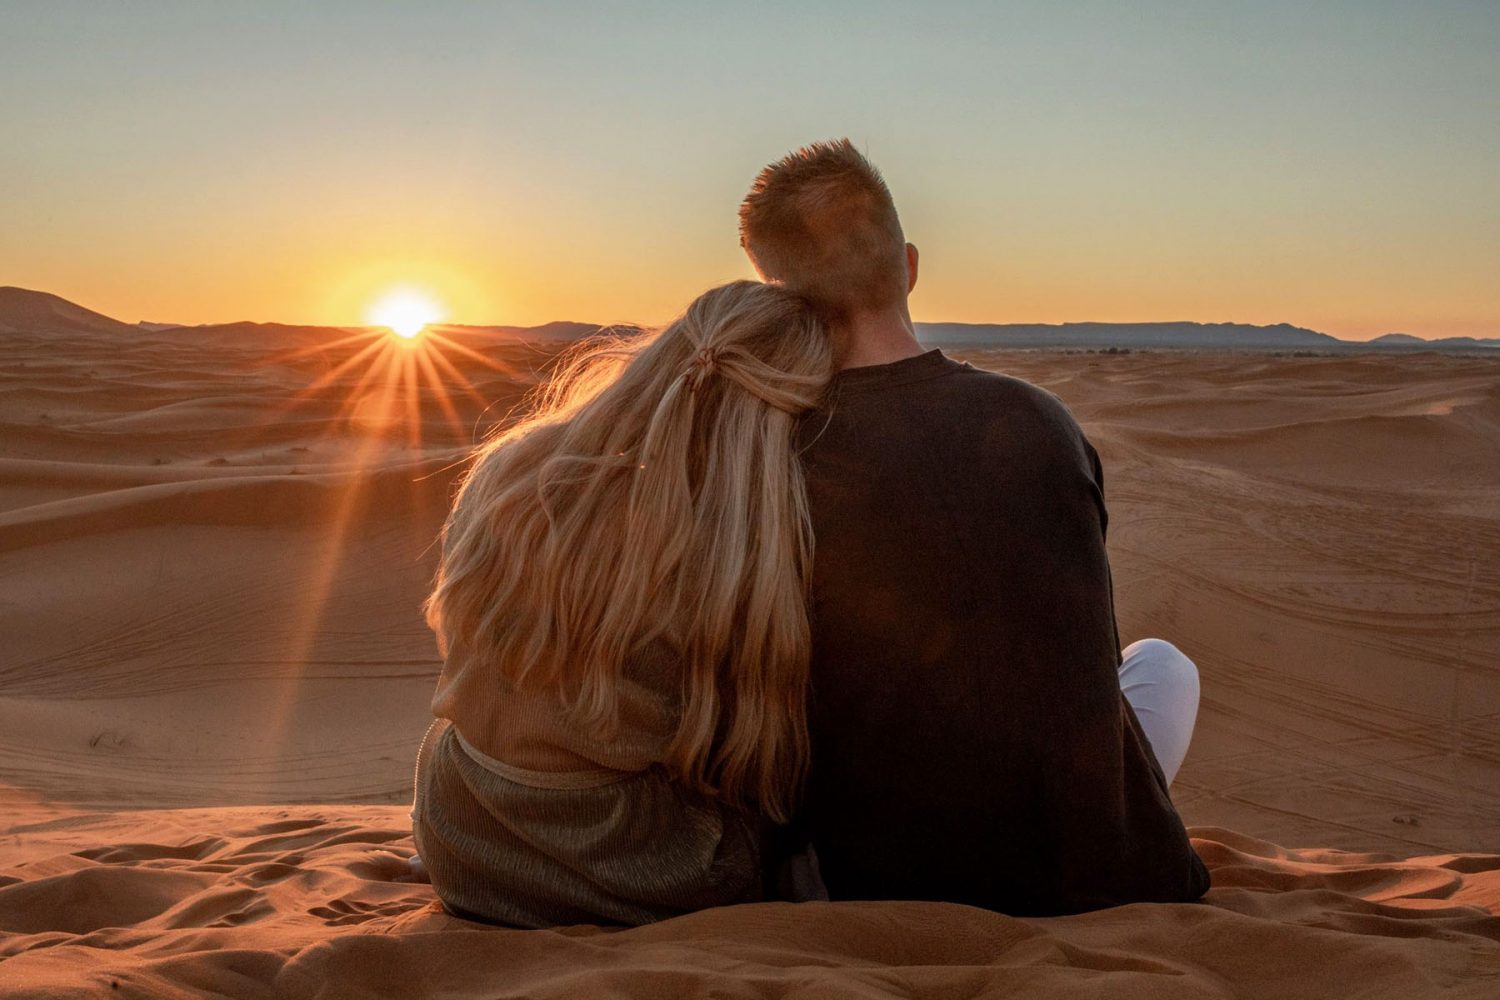 Sahara Desert Sunset with 4X4 Adrenaline Tour